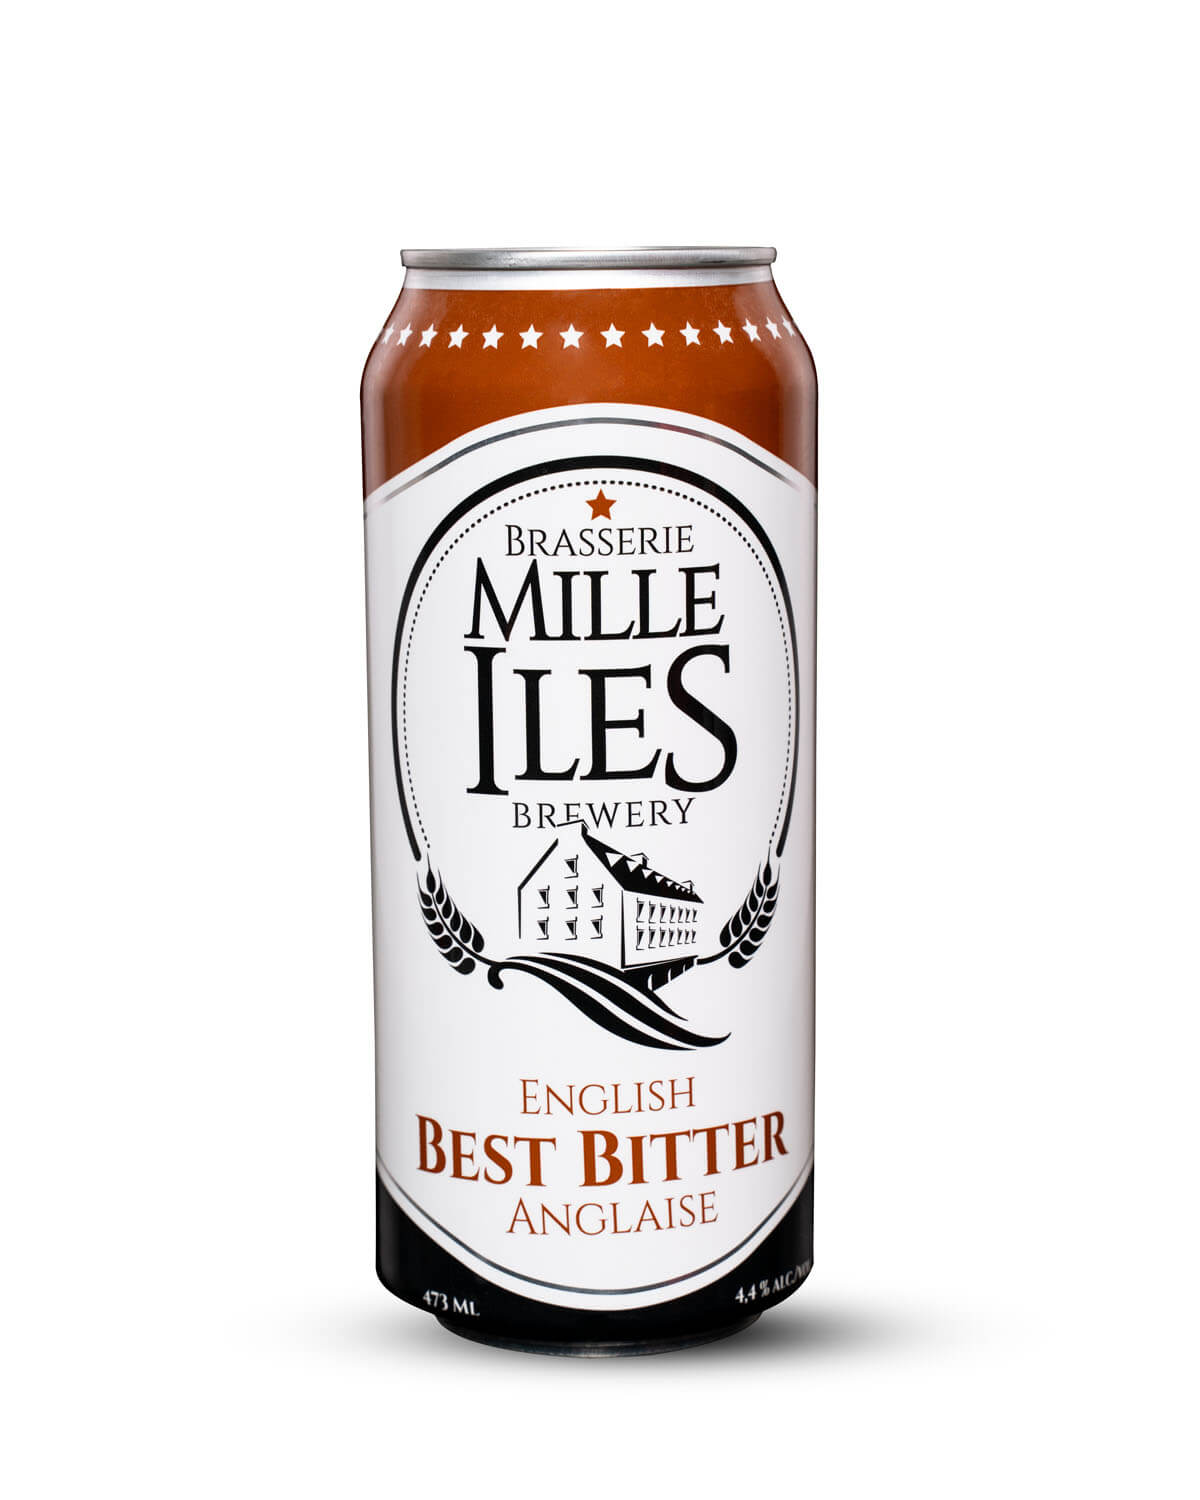 Best Bitter beer